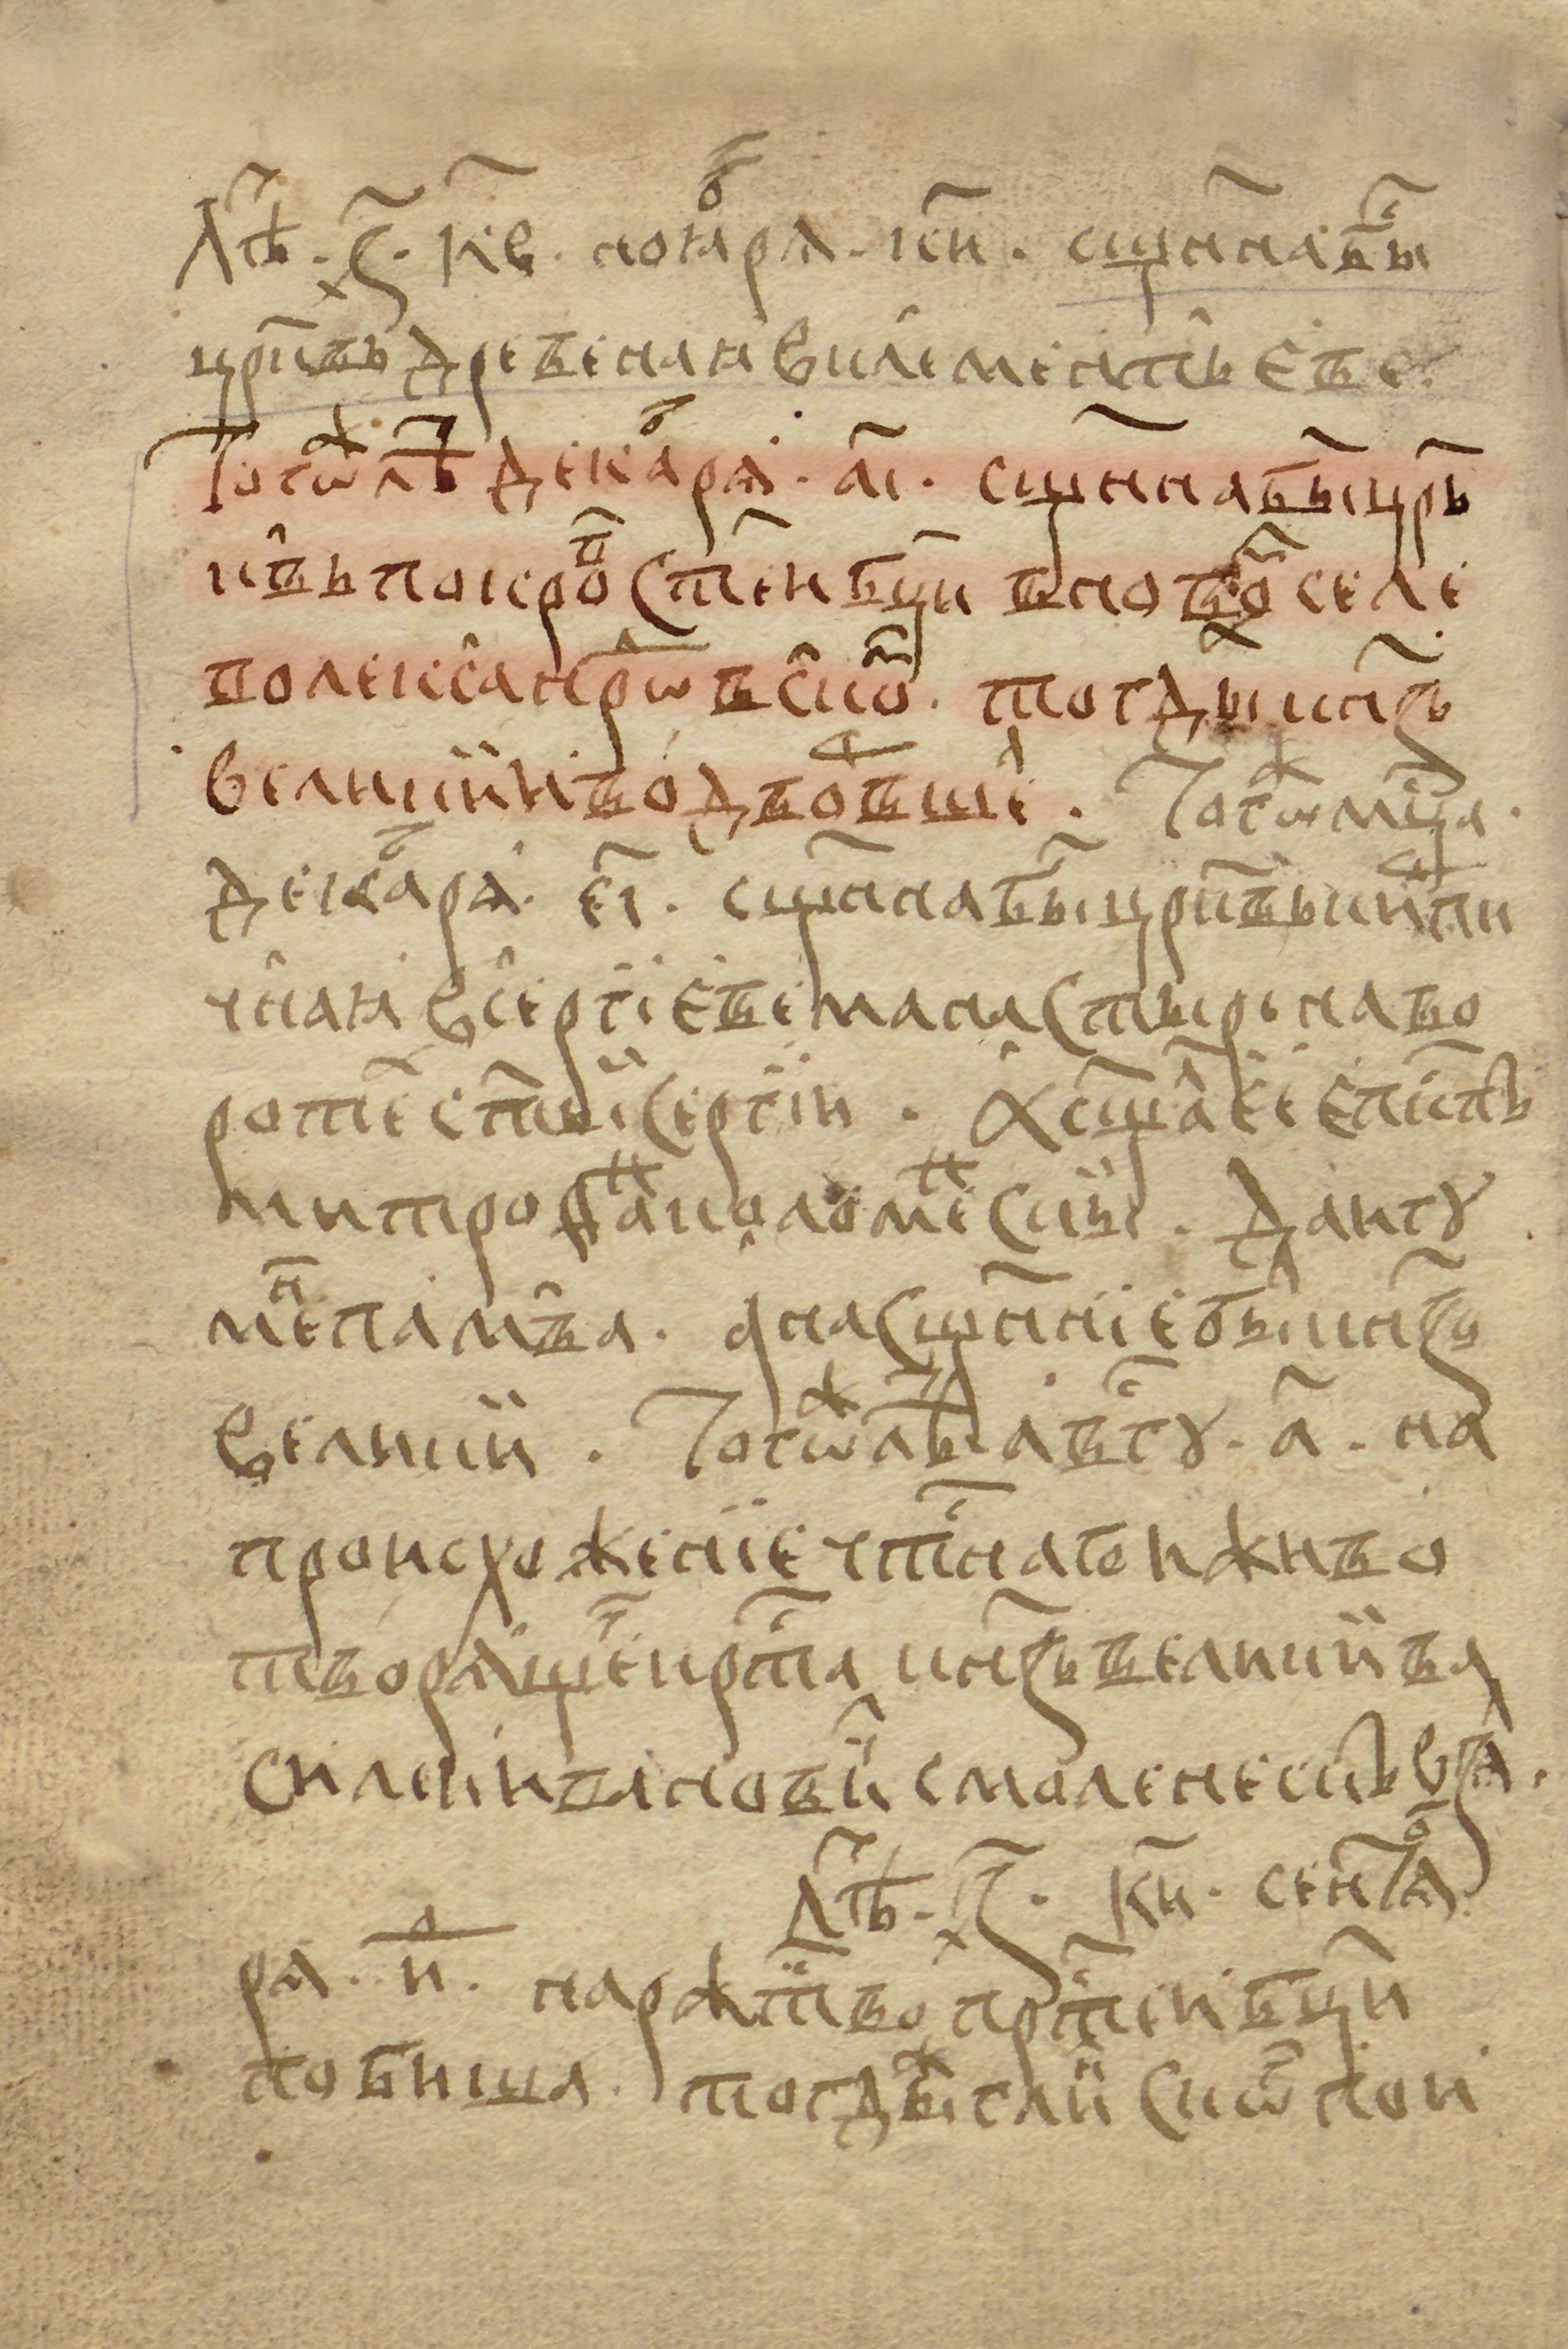 Документ об освящении церкви Покрова Пресвятой Богородицы в Слободе -11 декабря 1513 г.